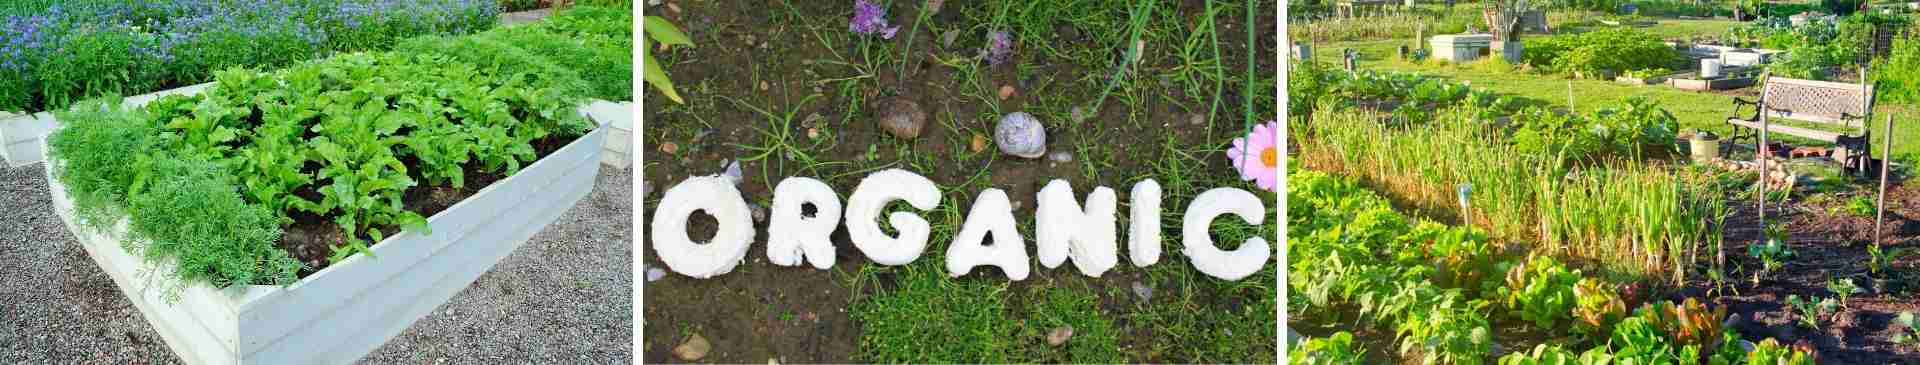 Starting an Organic Garden